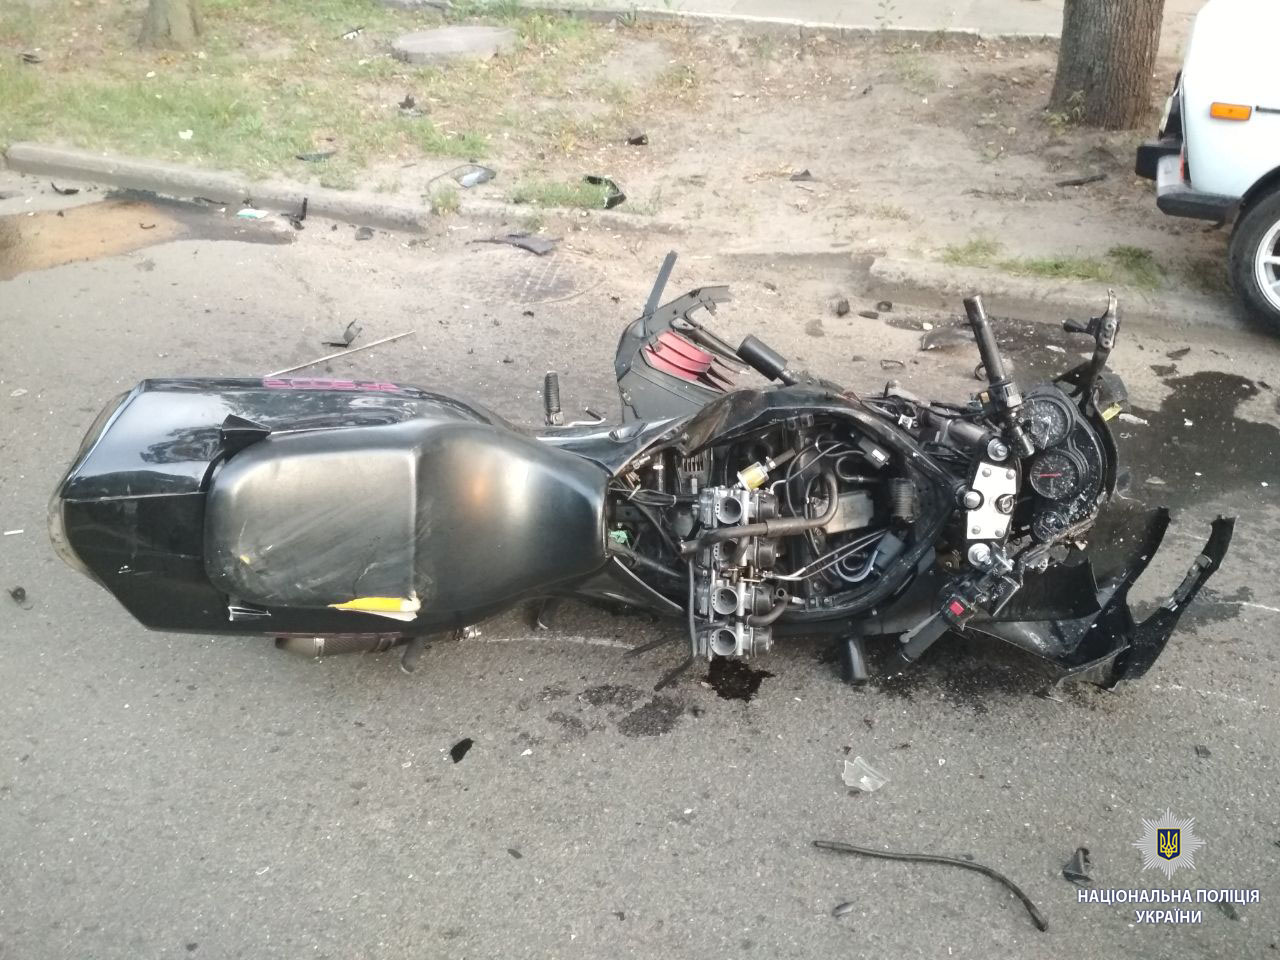 Новые подробности аварии на ХТЗ, в которой погибли мотоциклисты. Фото: патрульная полиция